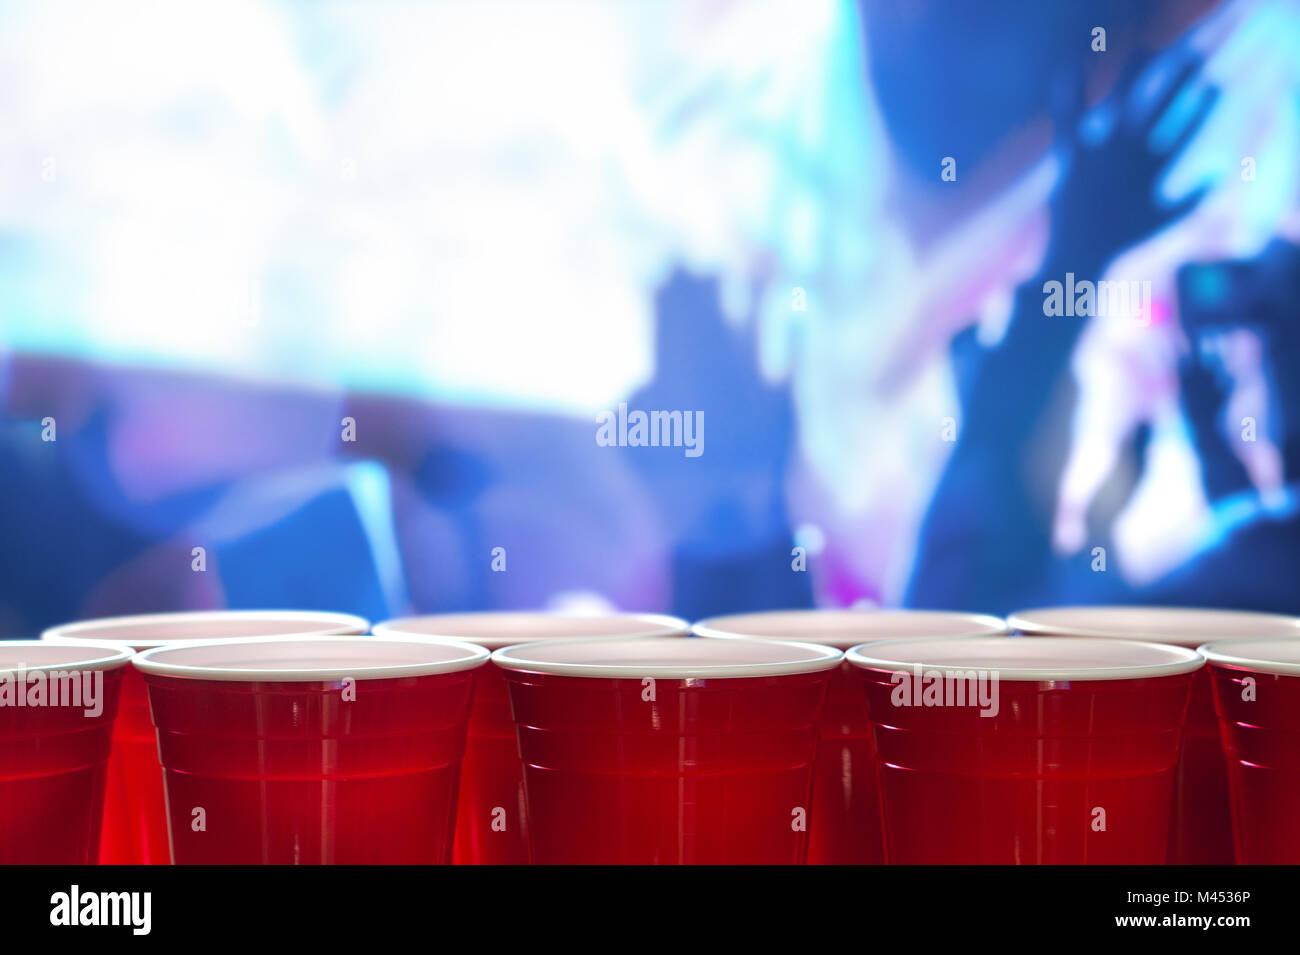 Kunststoff rot party Becher in einer Reihe in einem Nachtclub voller Menschen tanzen auf der Tanzfläche im Hintergrund. Perfekt für Marketing und Promotion. Stockfoto